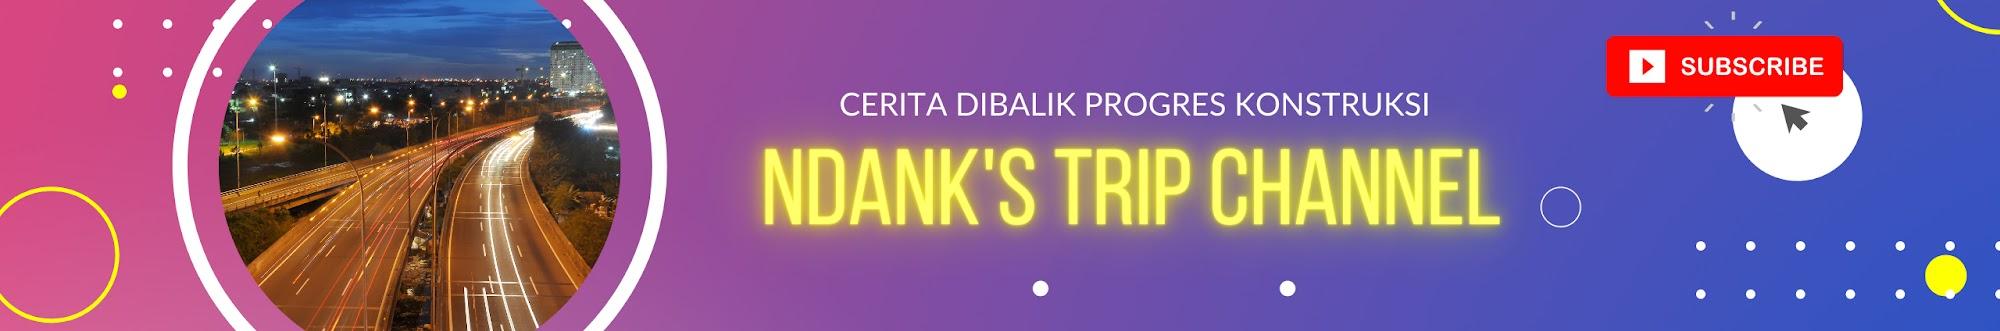 Ndank's Trip Channel